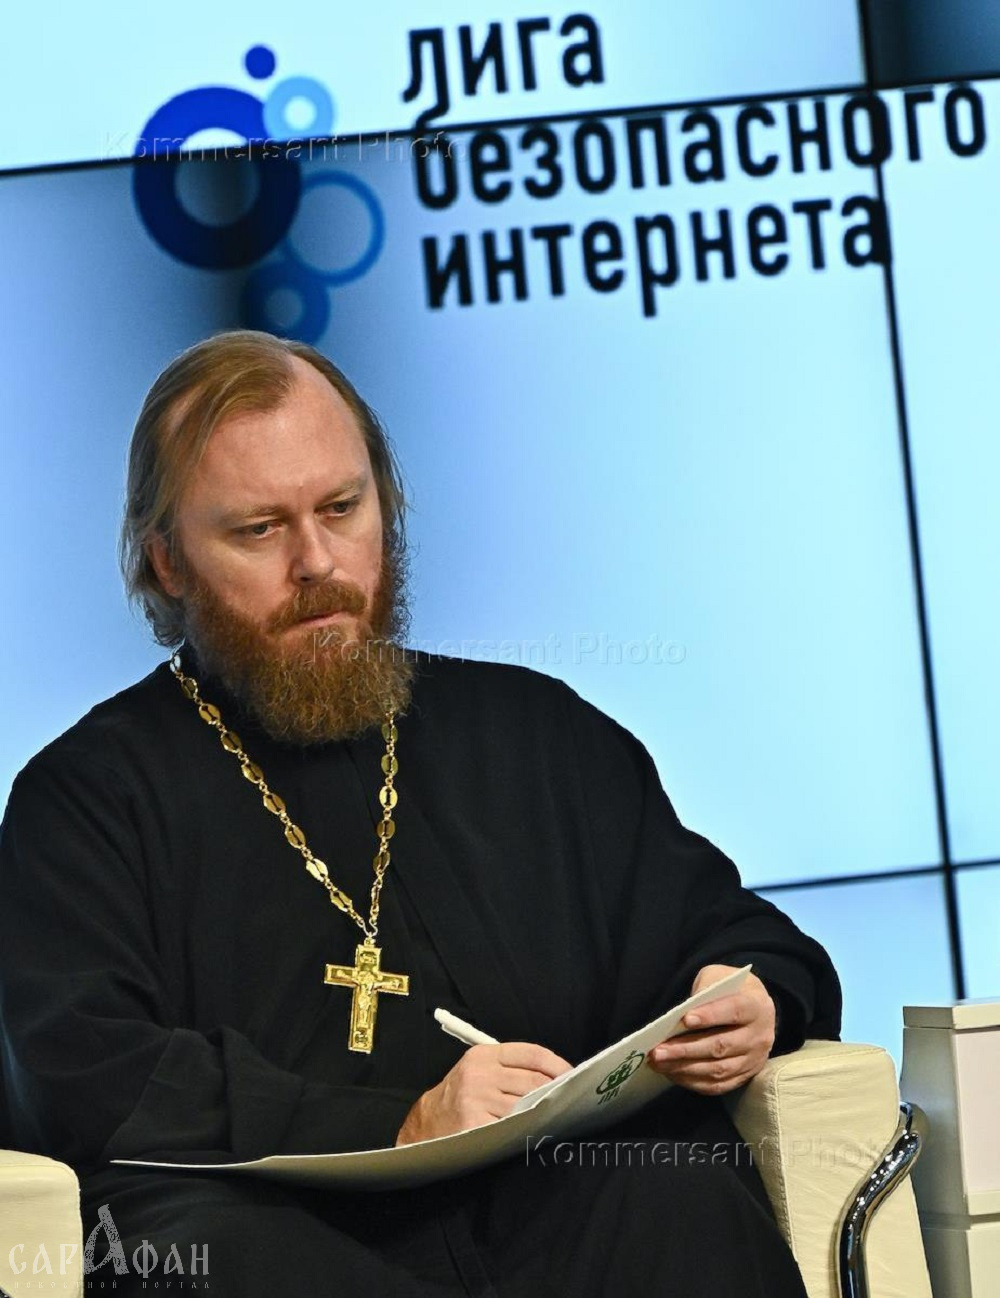 Сатанизм и фанфики: РПЦ требует ввести ограничения для российского сайта «Фикбук» 